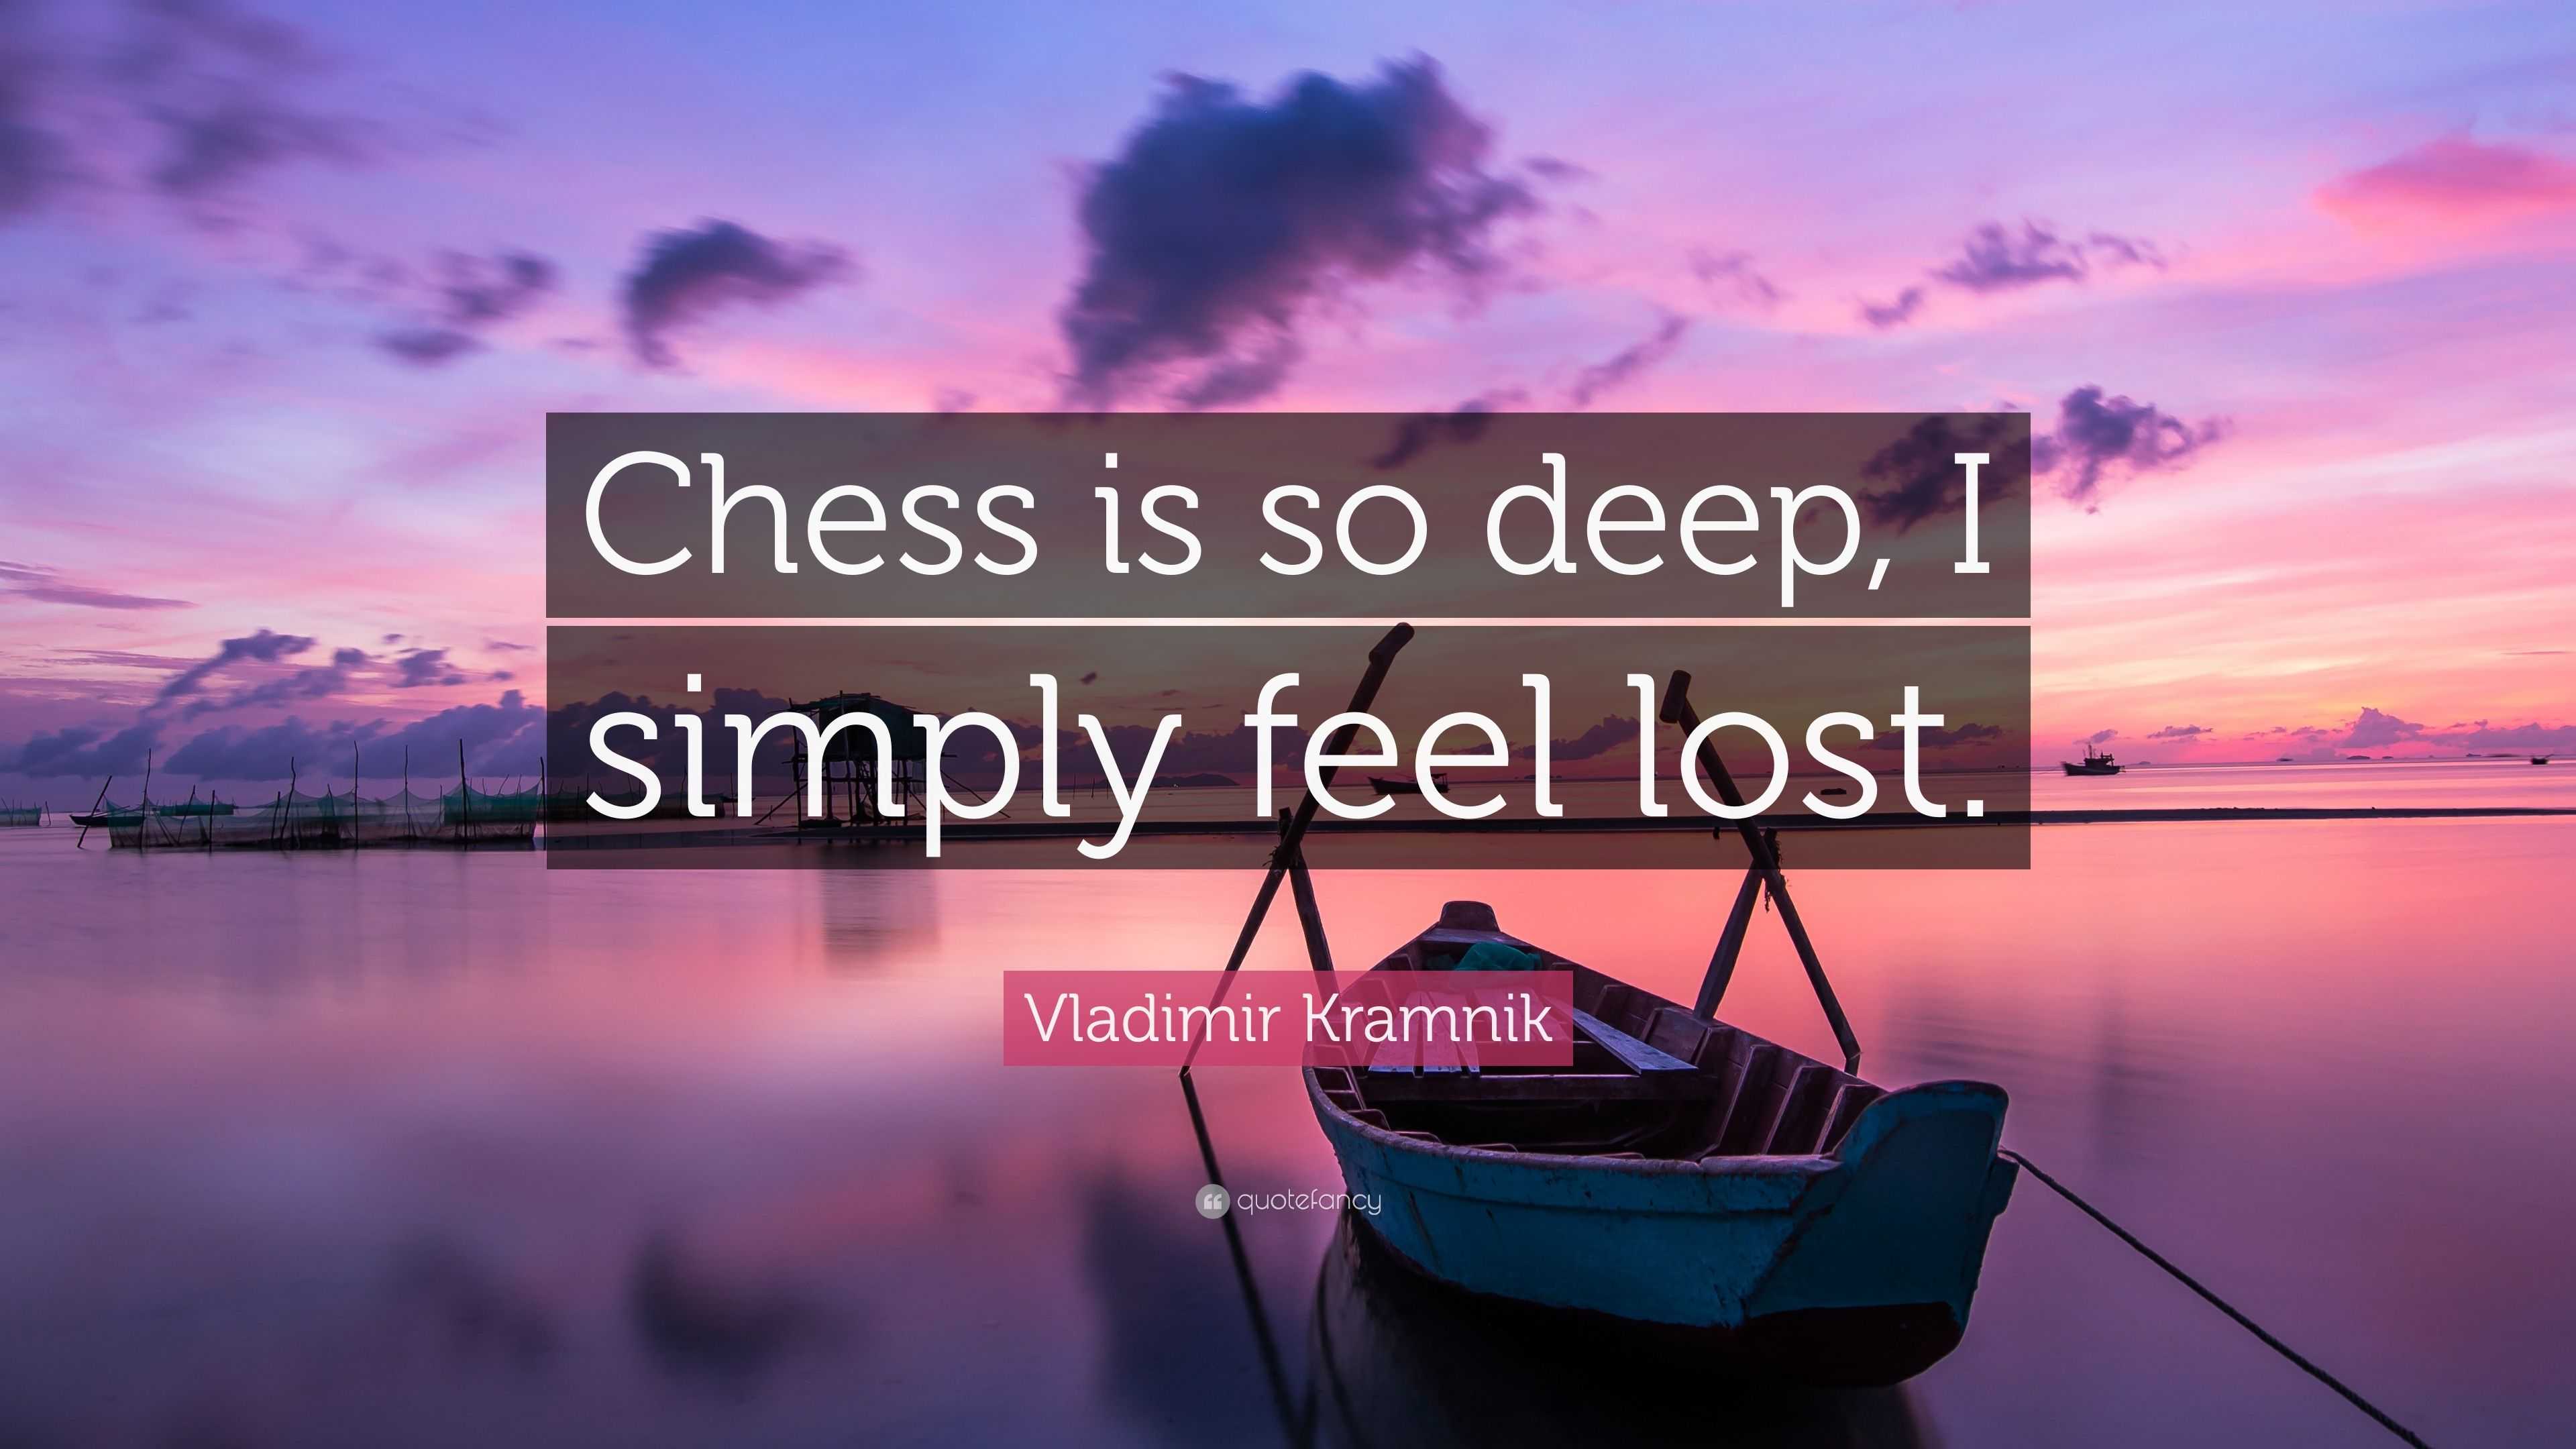 Vladimir Kramnik Interview: 'I'm Not Afraid To Lose' 